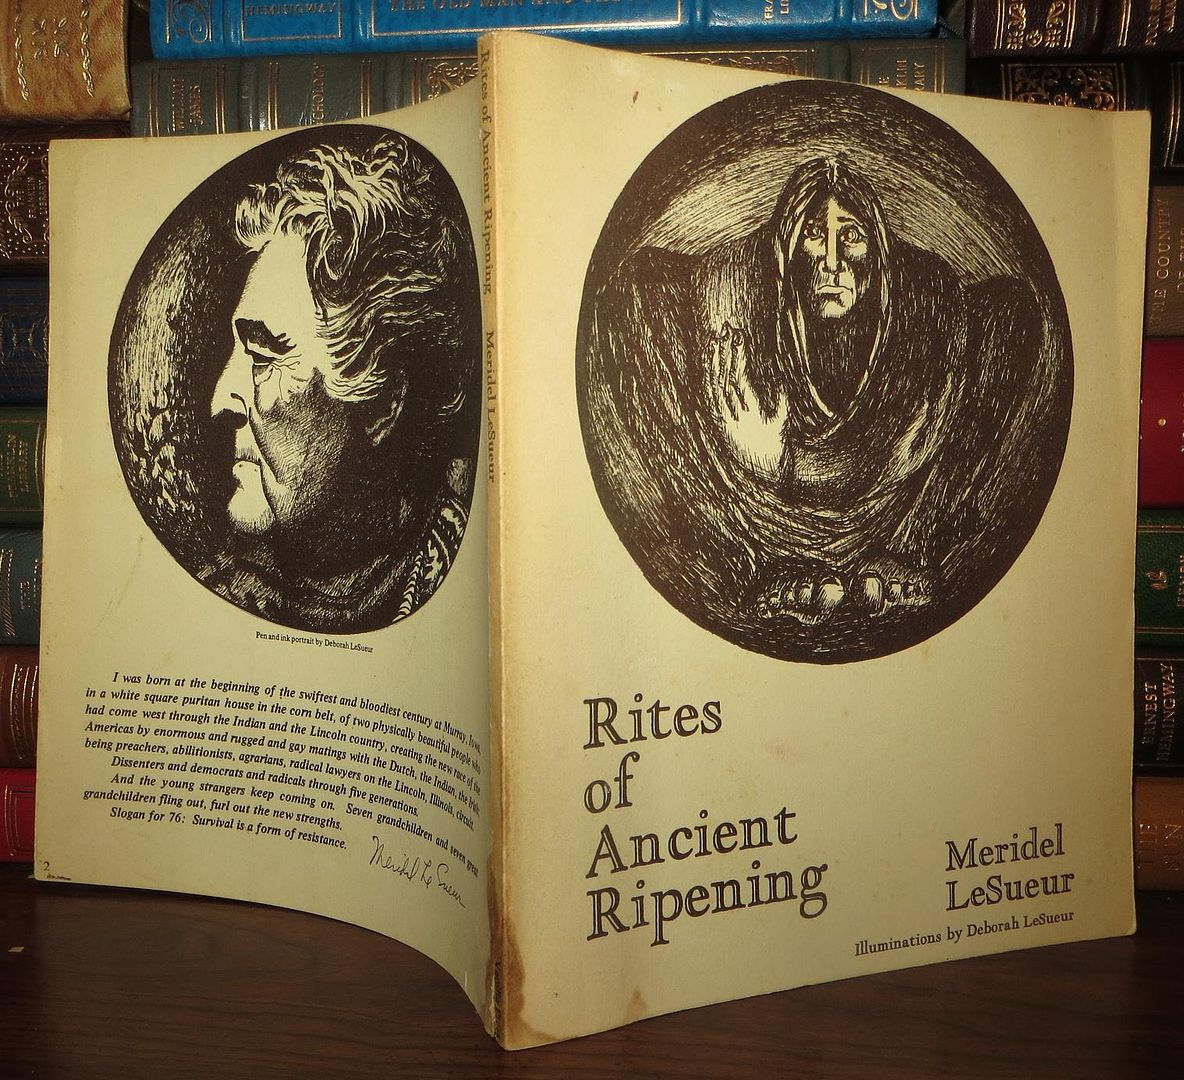 LESUEUR, MERIDEL - Rites of Ancient Ripening